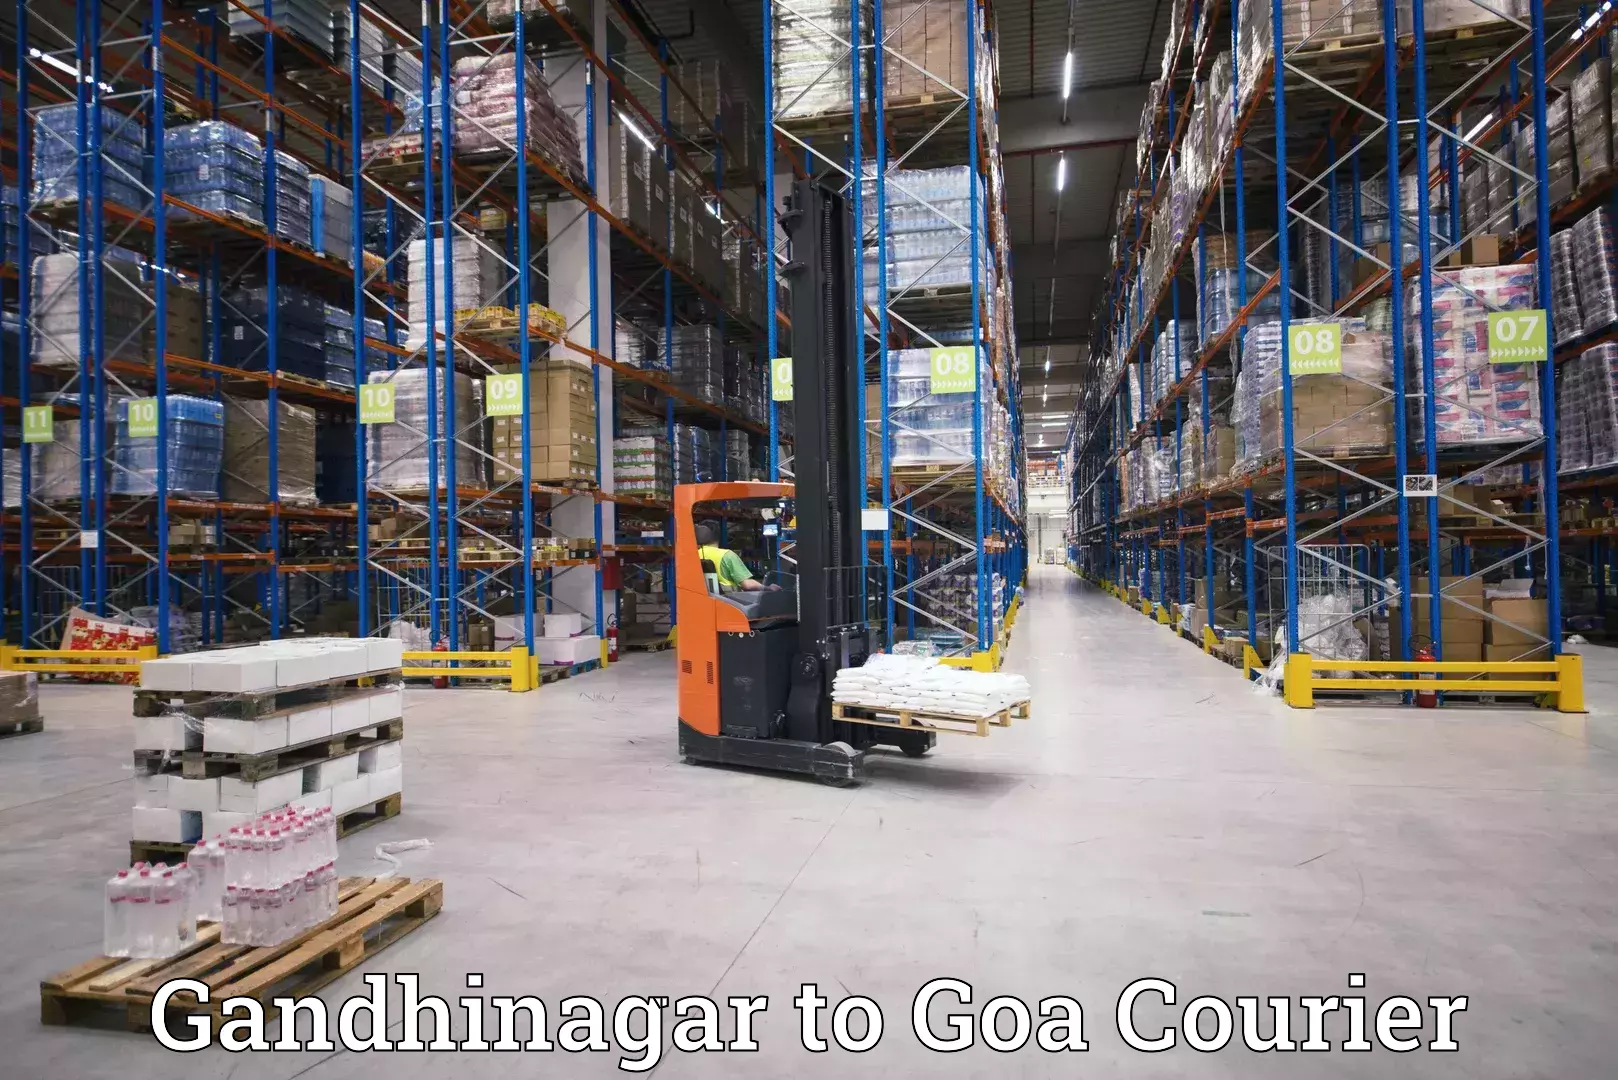 Quick dispatch service Gandhinagar to South Goa